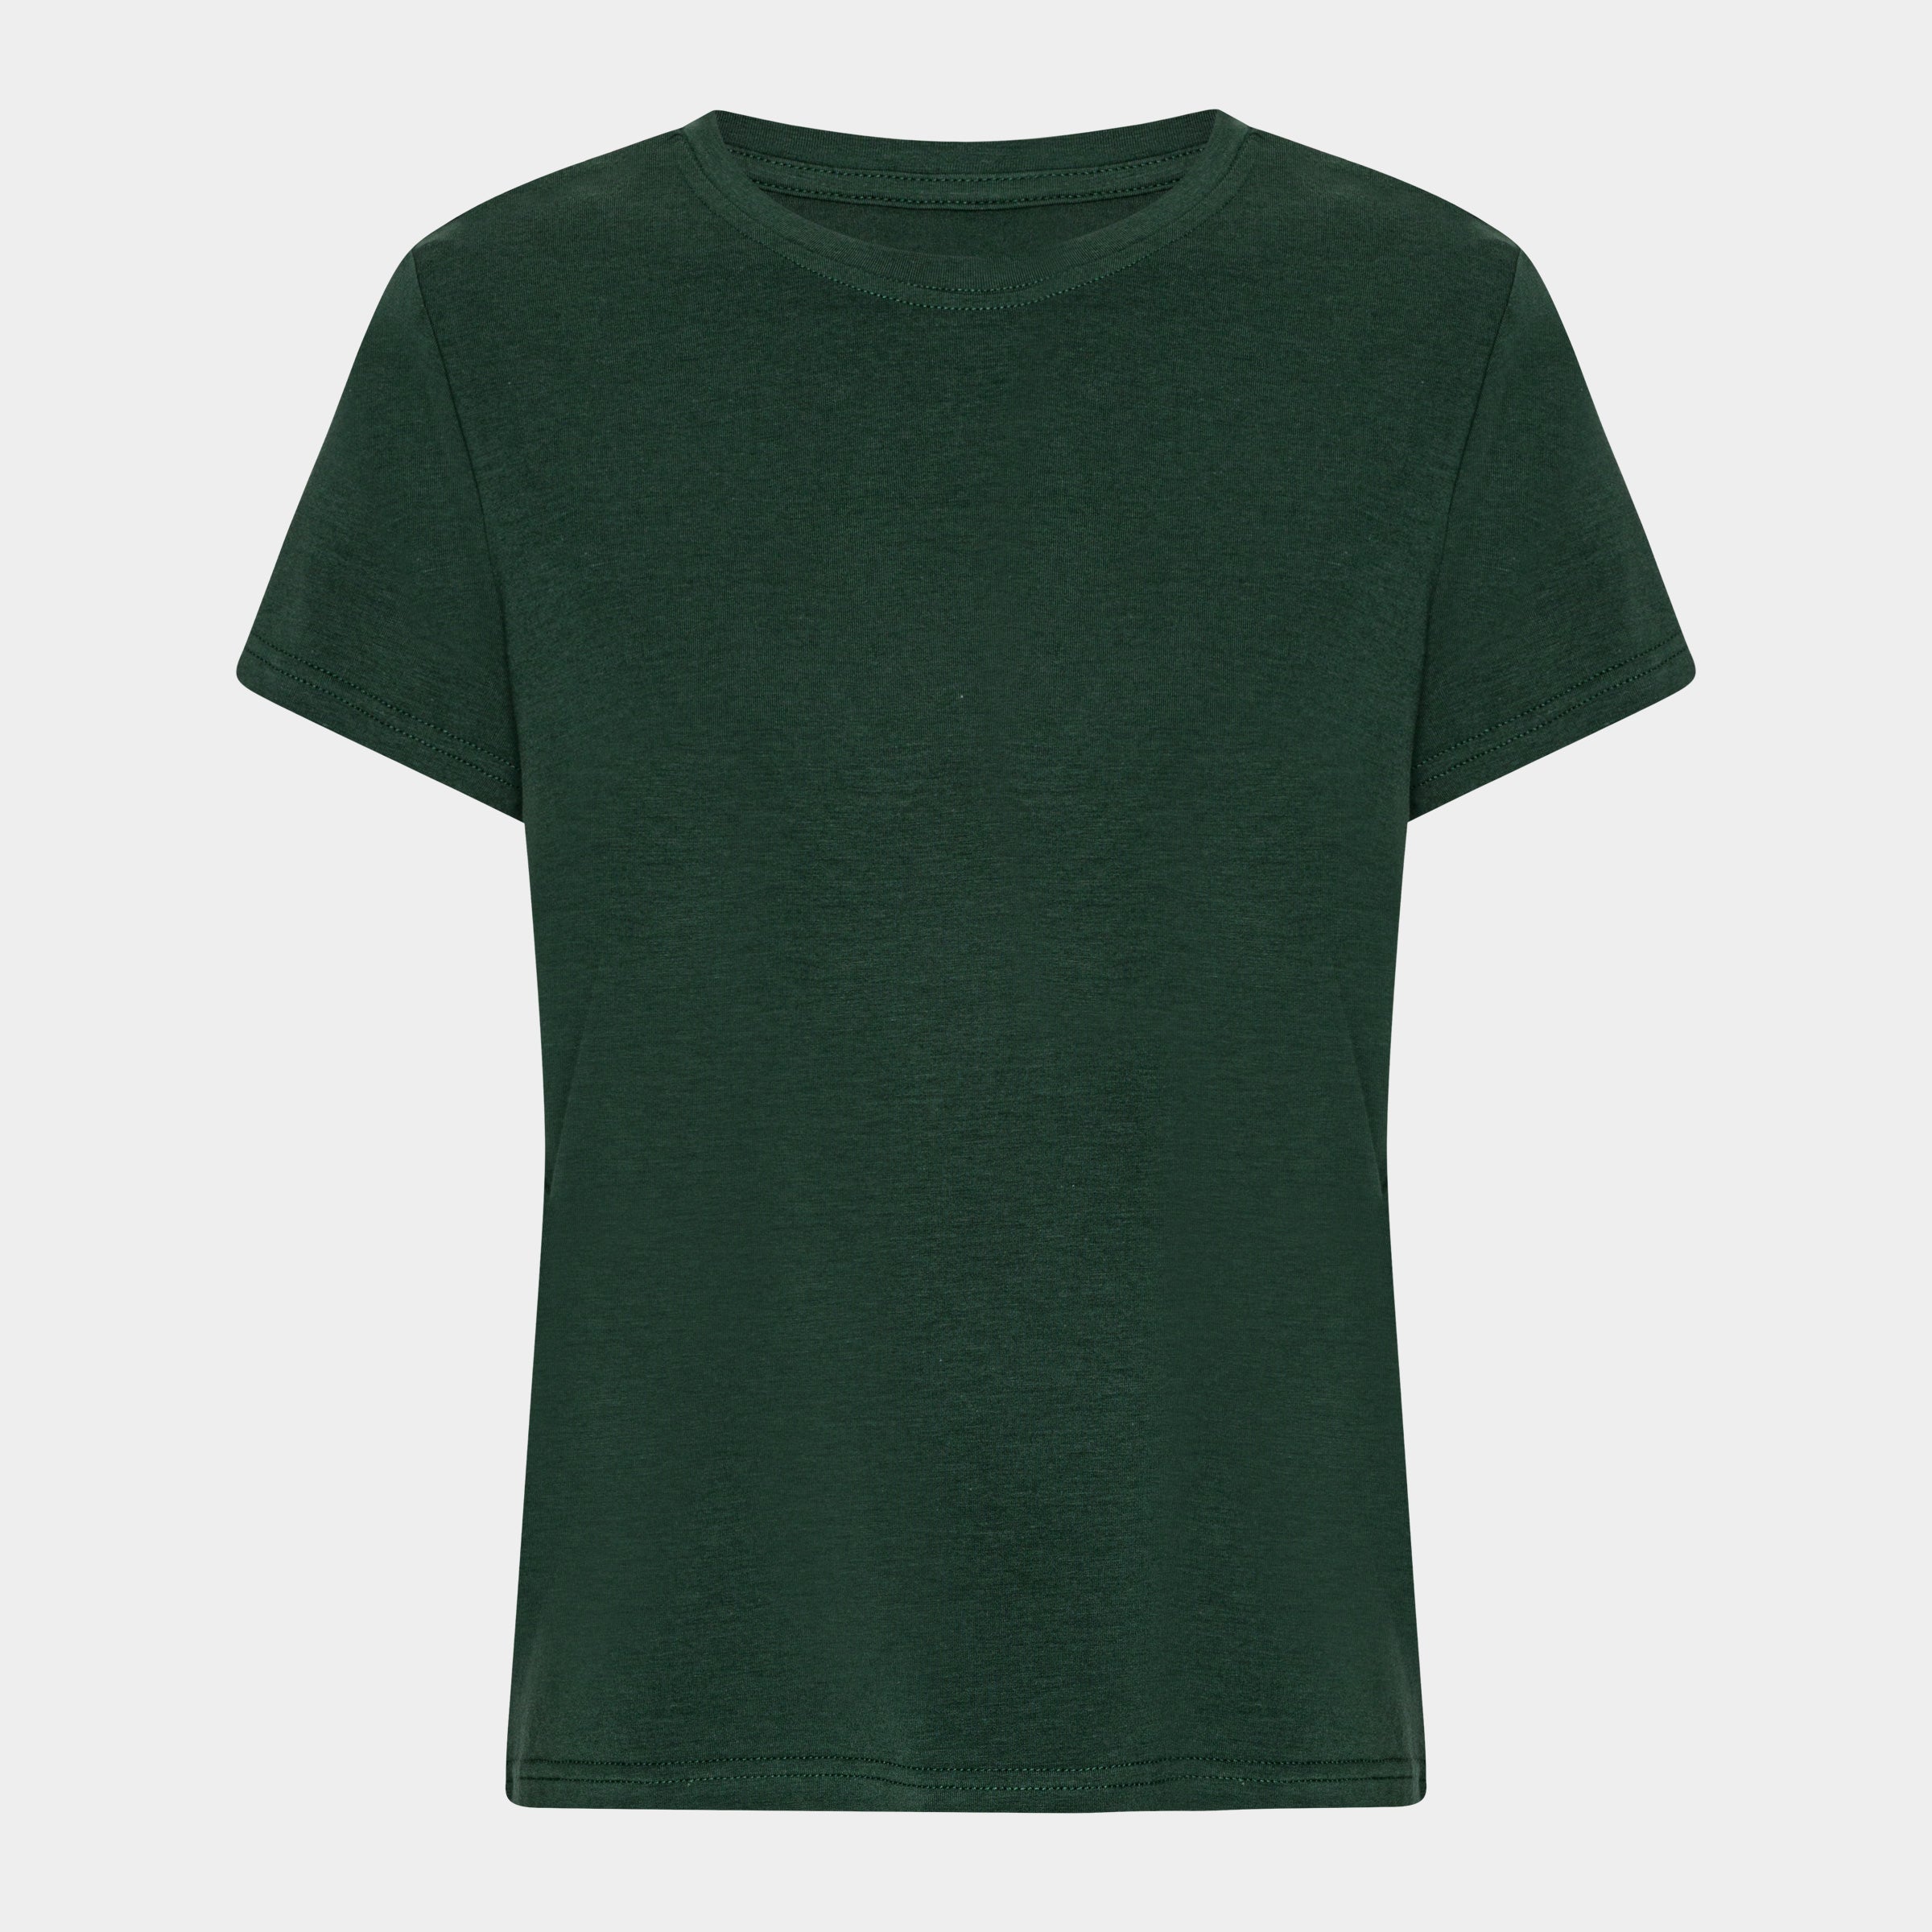 Billede af Mørkegrøn kortærmet bambus T-shirt til dame fra Copenhagen Bamboo, L hos Bambustøj.dk